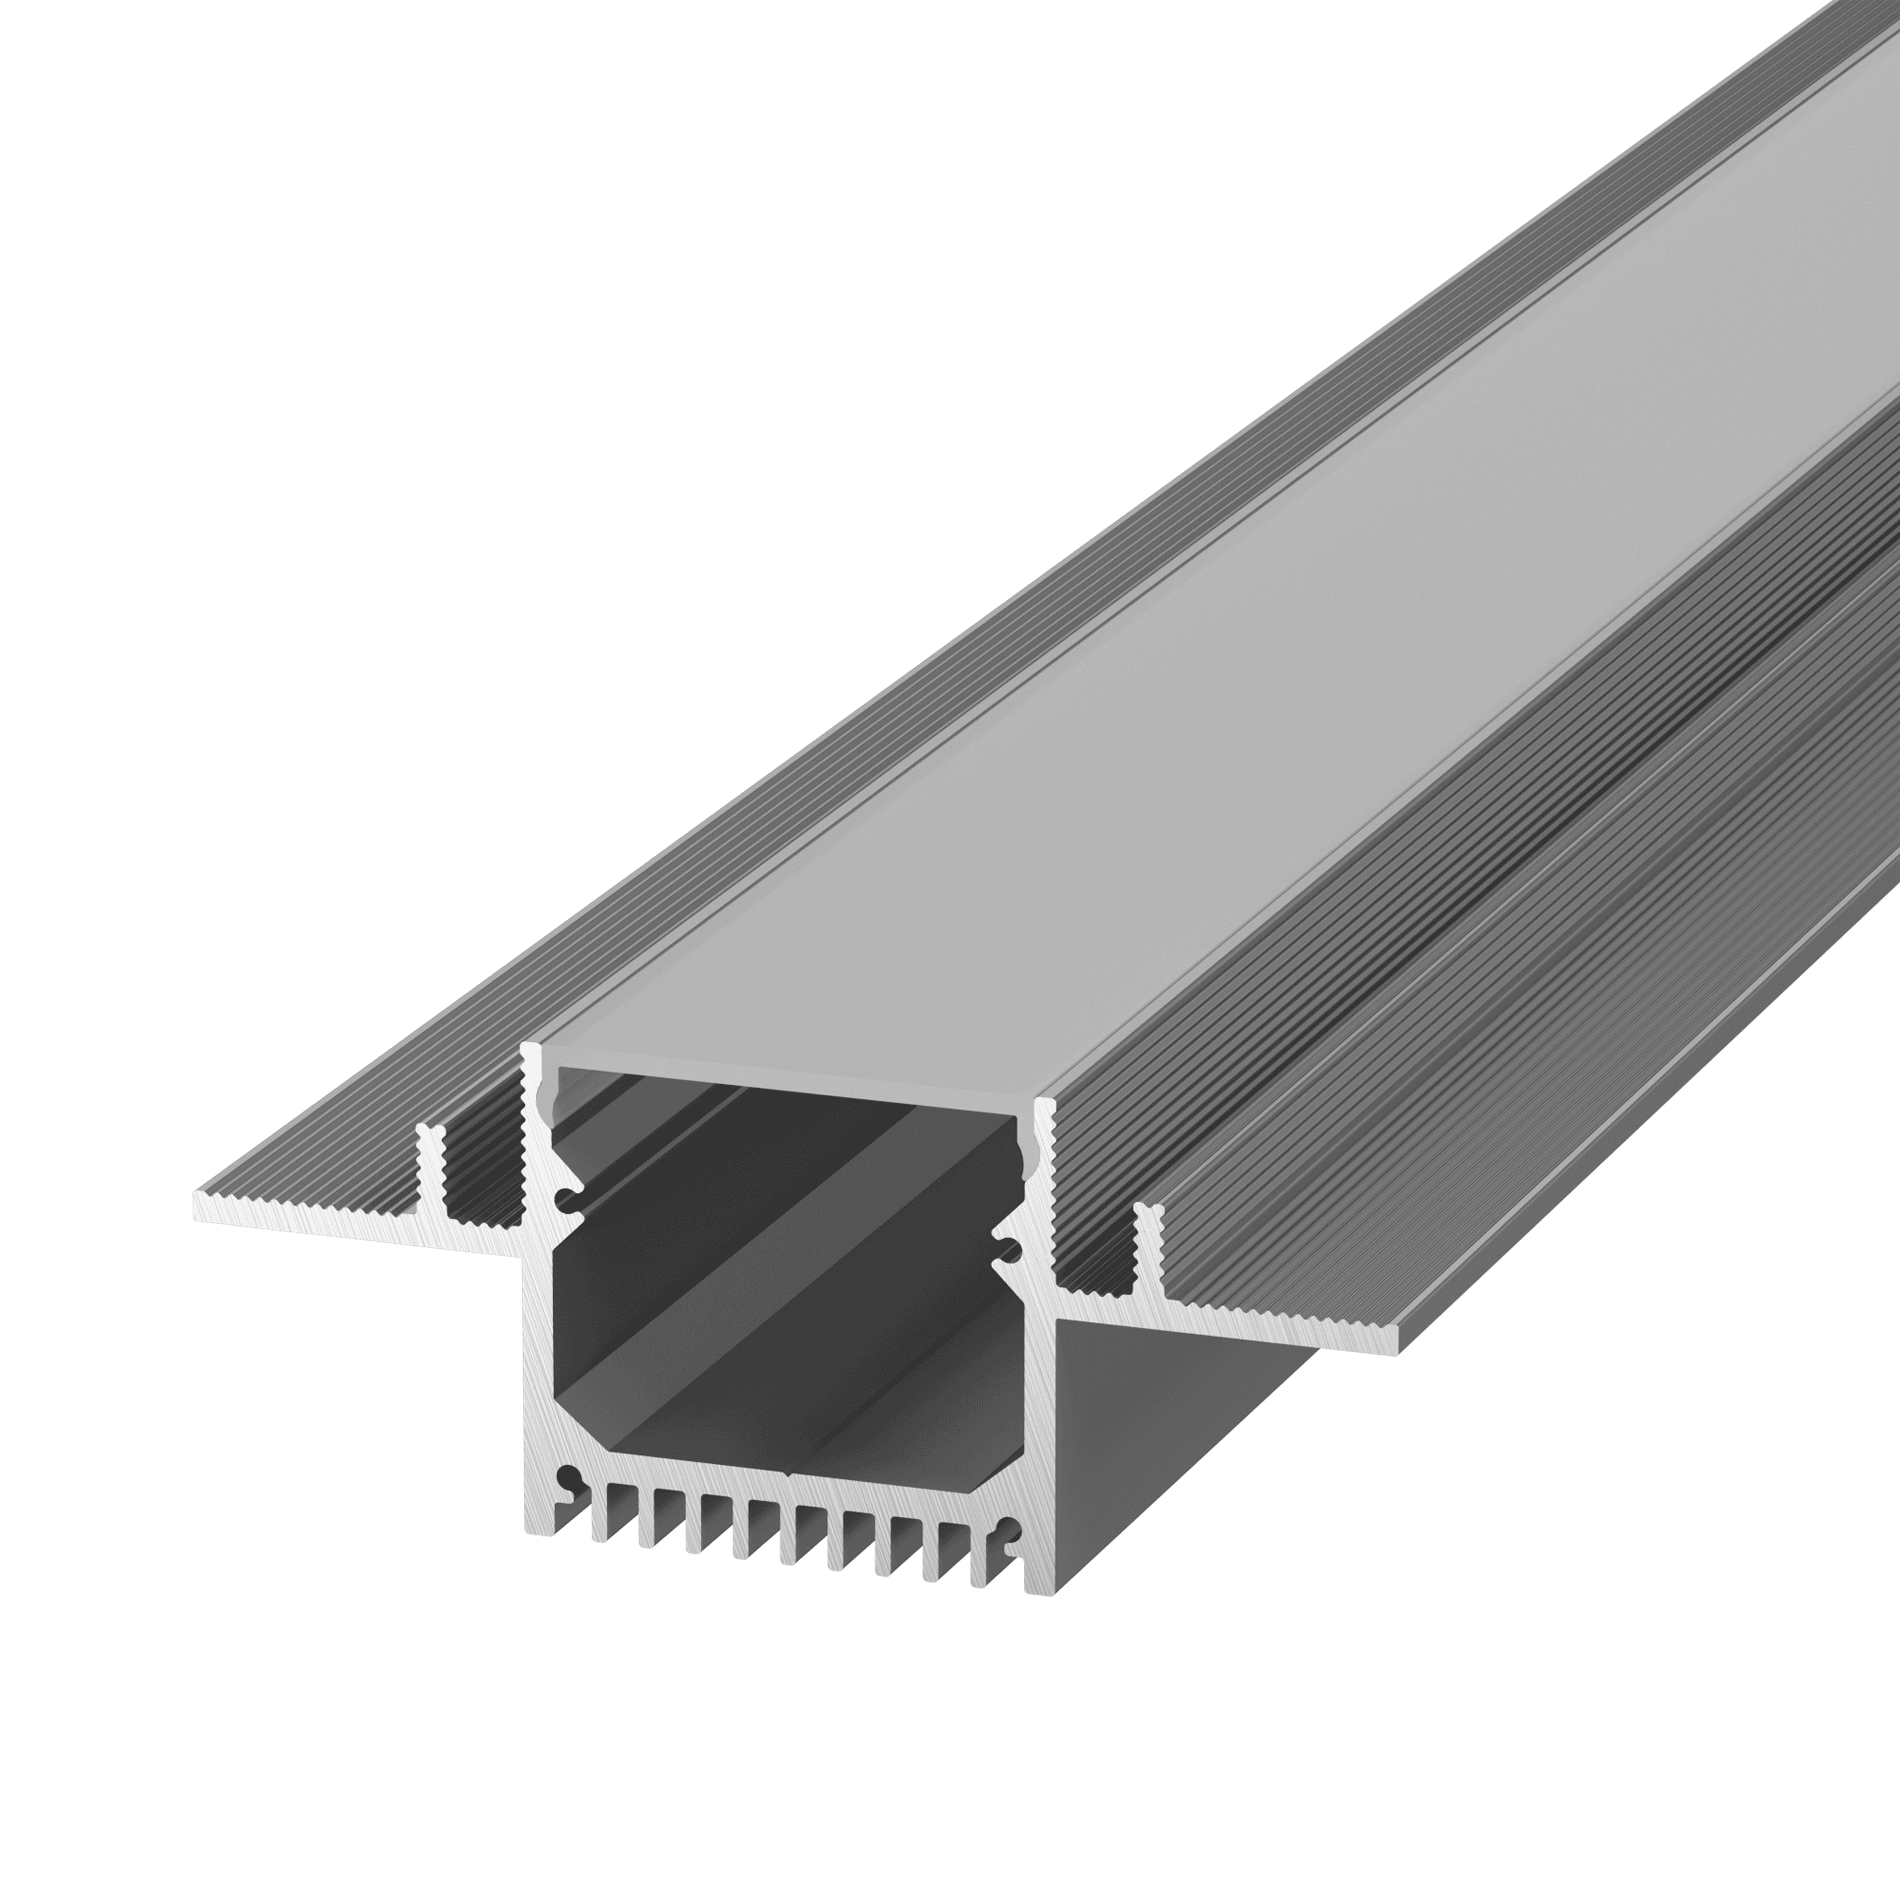 Алюминиевый профиль Design LED без видимой рамки LG35, 2500 мм, анодированный LG35-R тавр алюминиевый 15х15х2 мм 1 м серебро